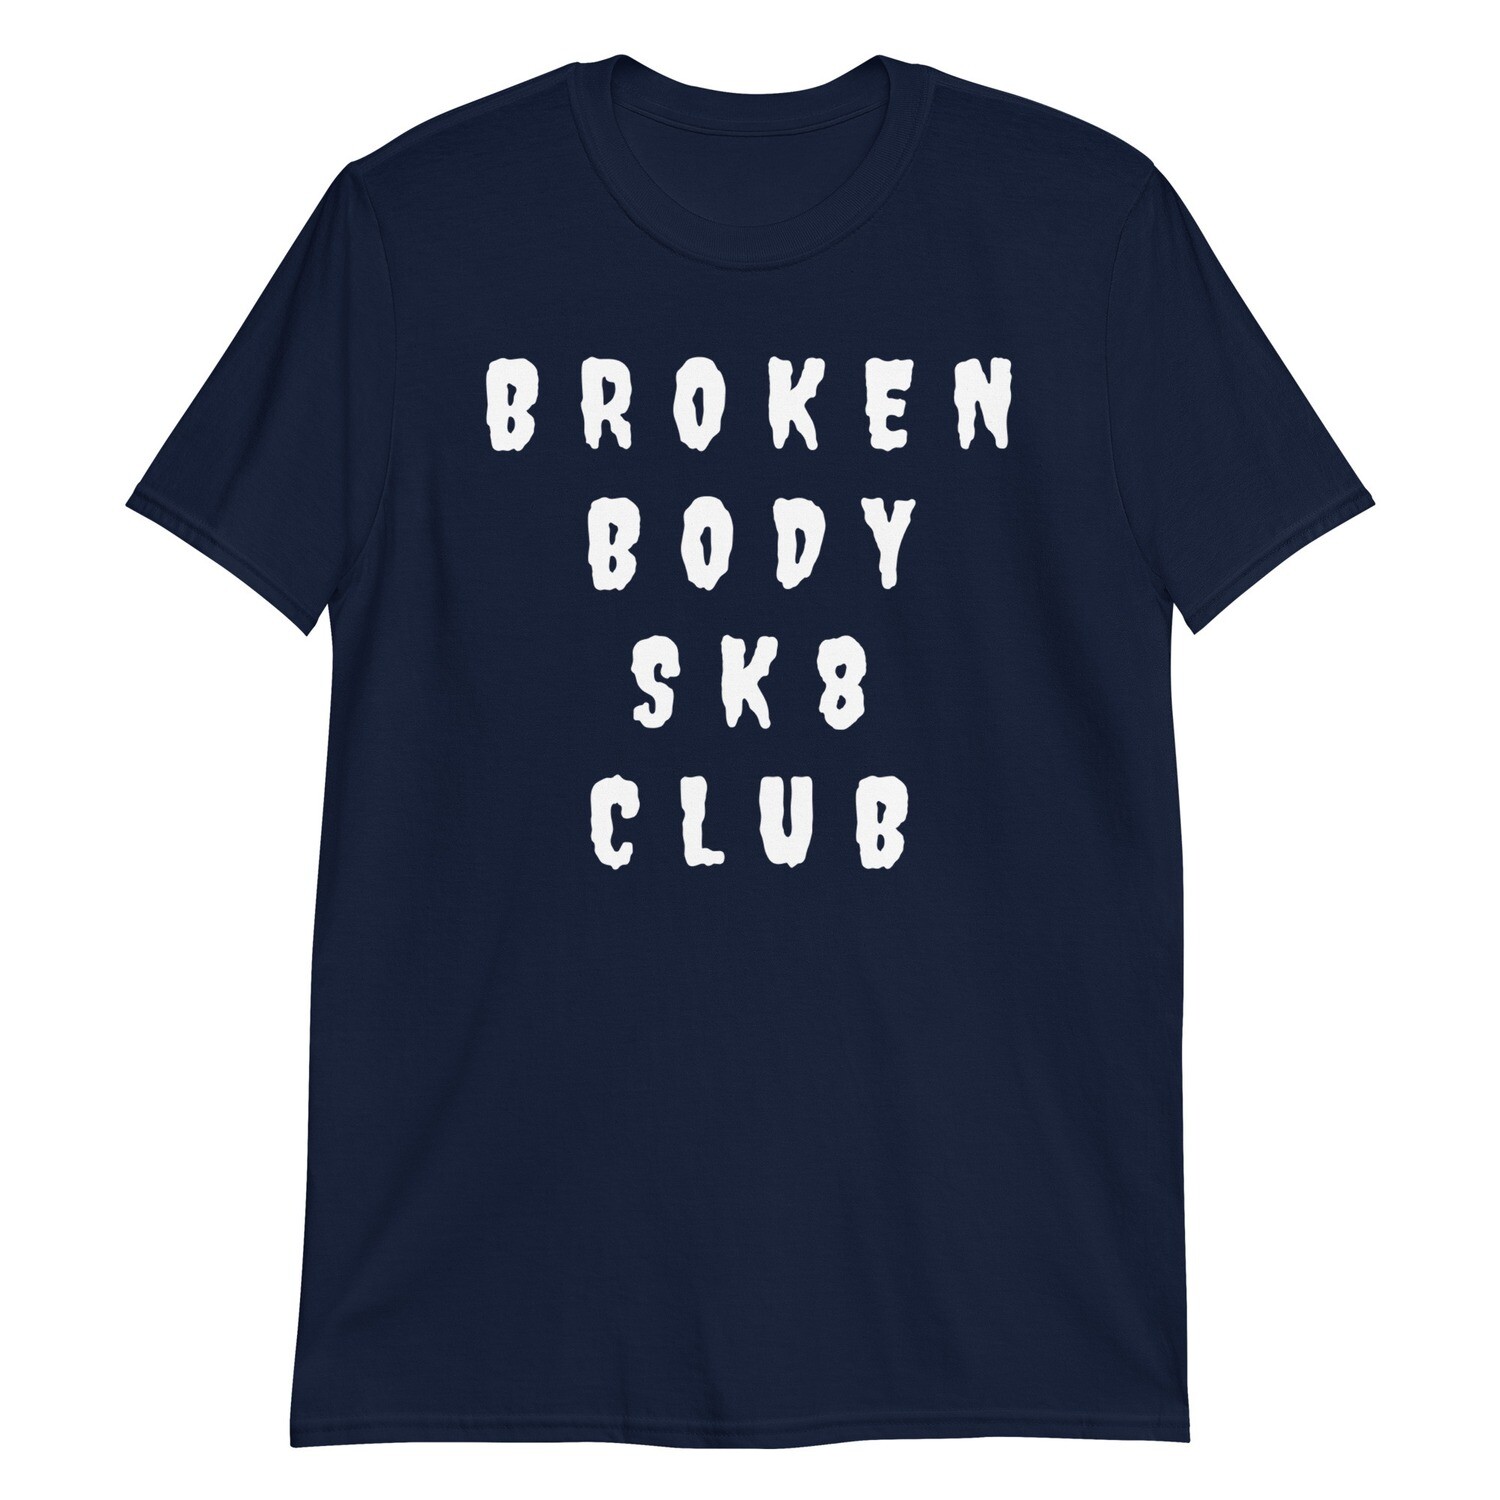 BROKEN BODY SK8 CLUB - Short-Sleeve T-Shirt